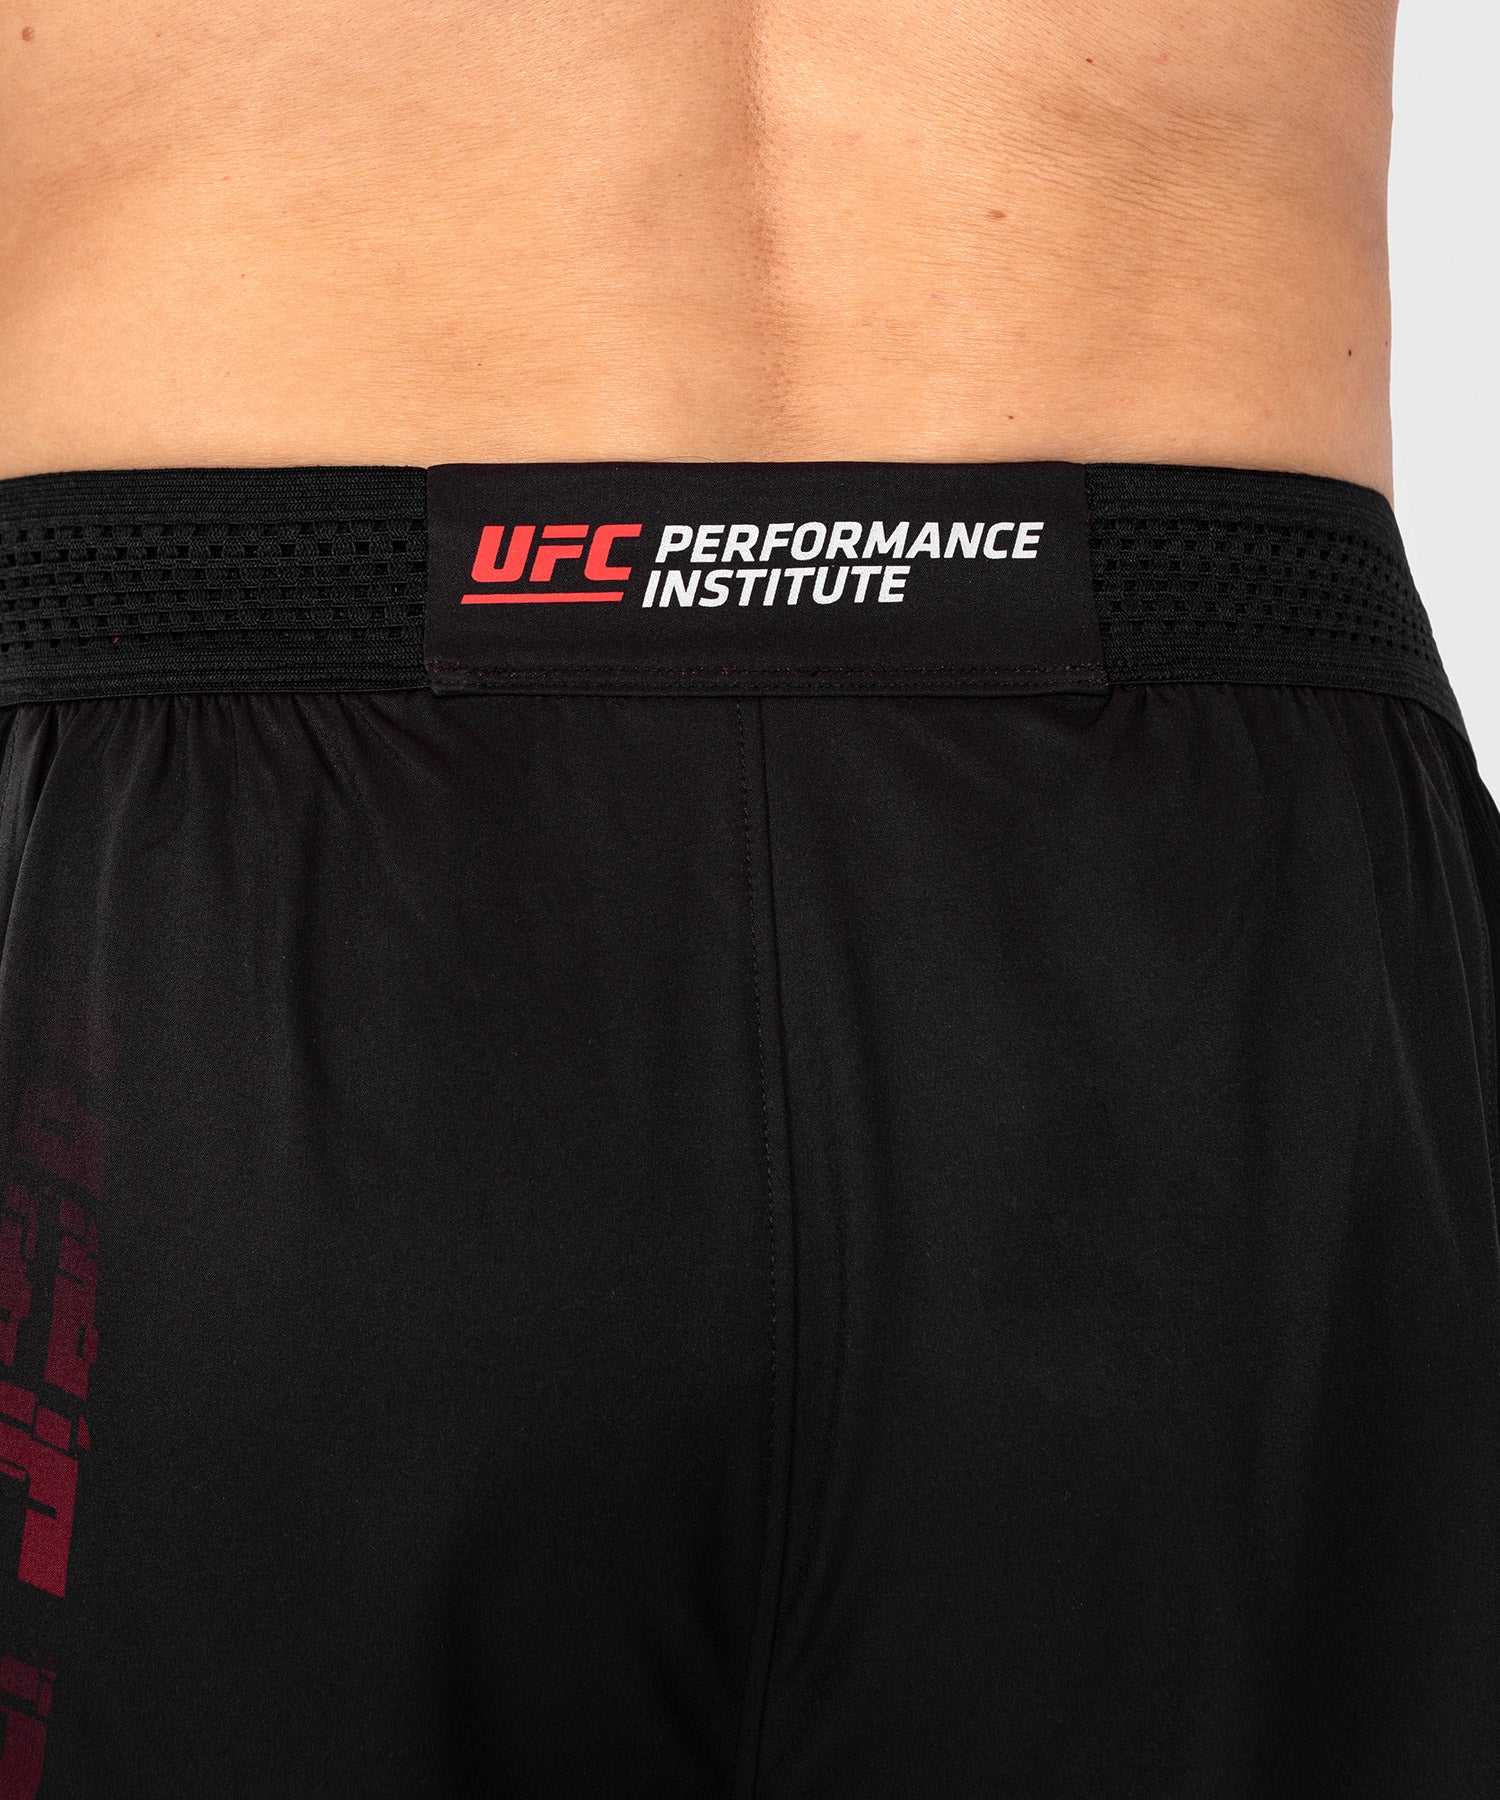 Short de performance pour hommes UFC Venum Performance Institute 2.0 - –  Venum France